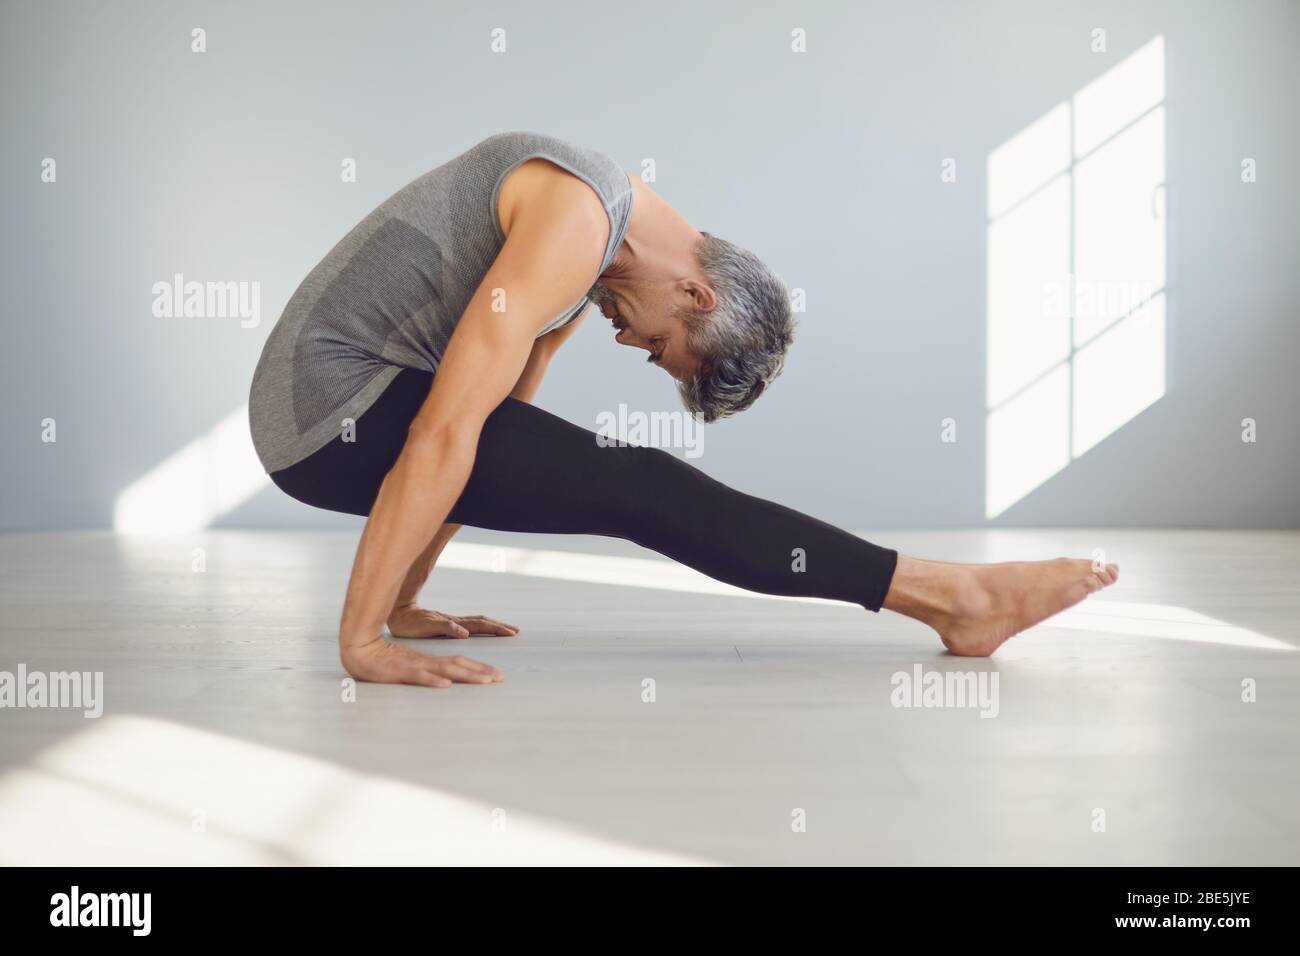 Yoga-Mann. Ein Mann übt Yoga-Balance in einem grauen Raum. Stockfoto